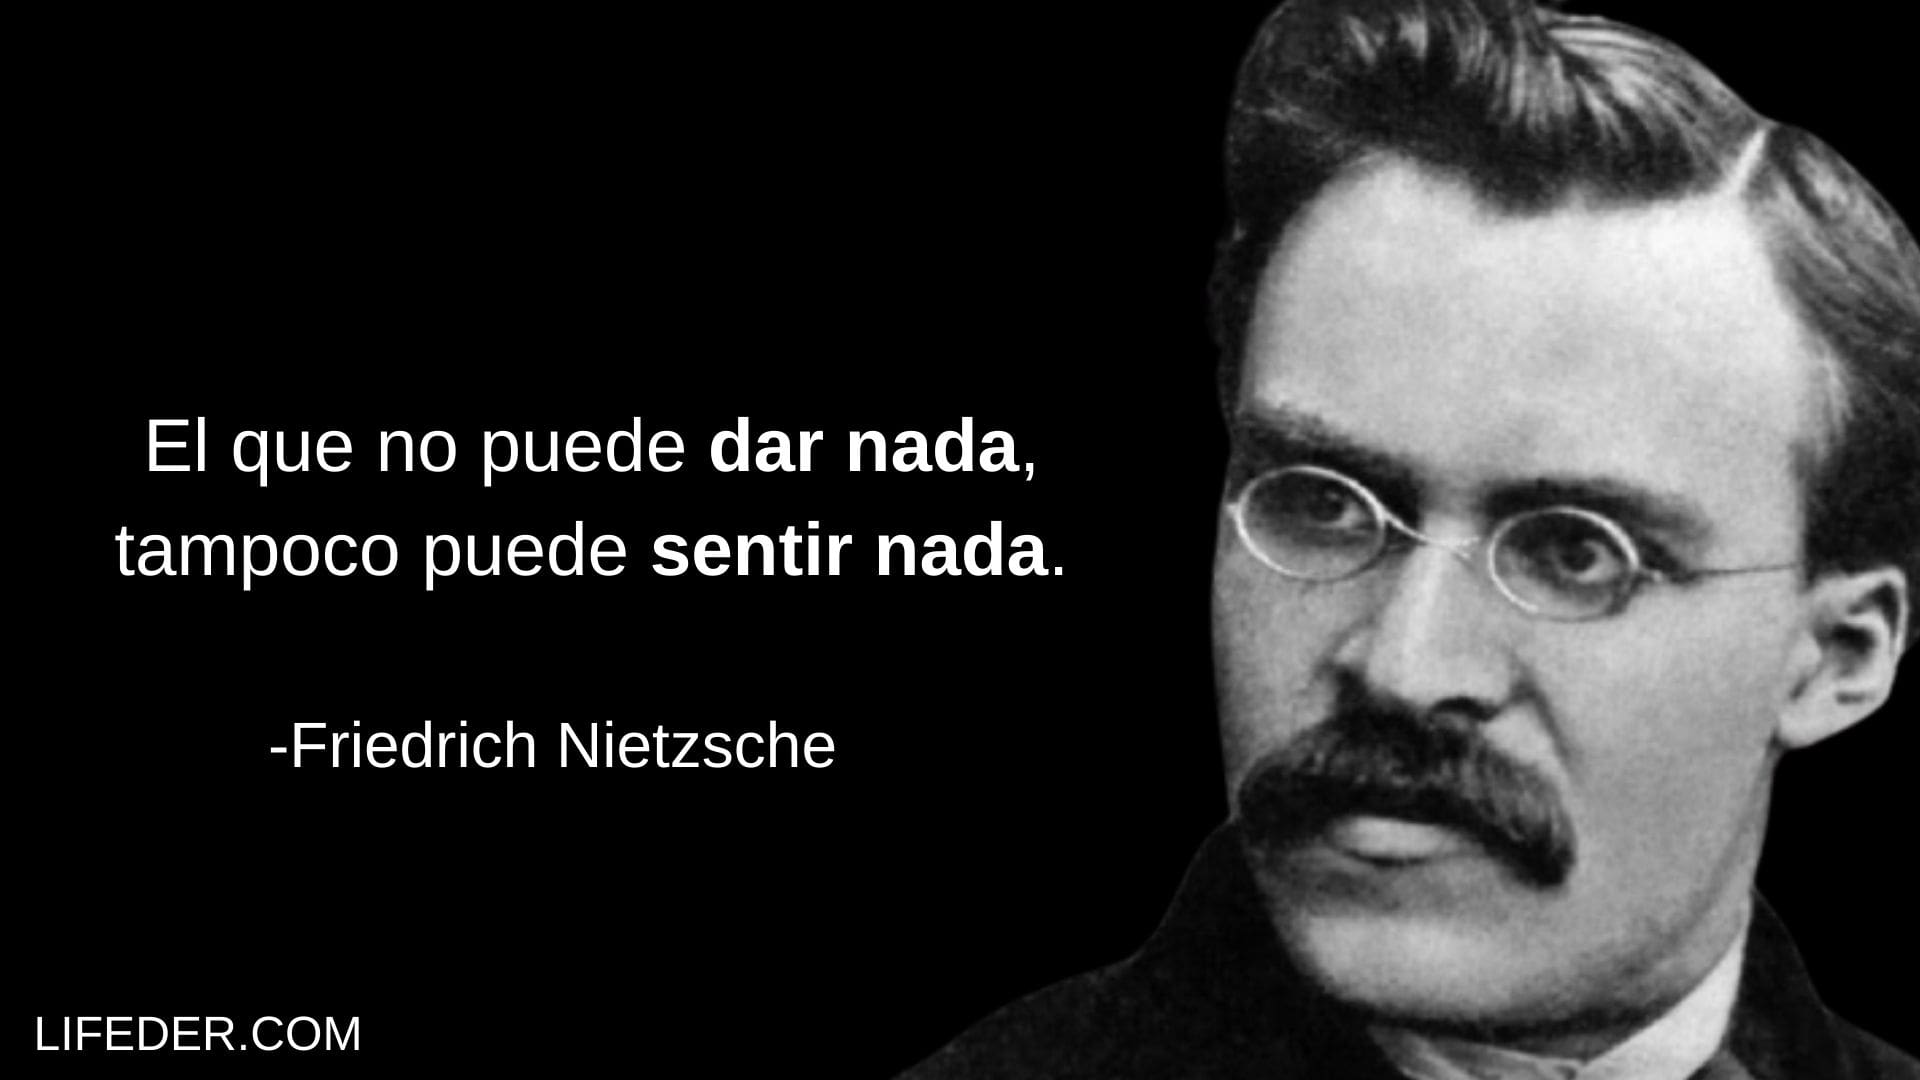 100 Frases De Friedrich Nietzsche Para Conocer Su Filosofía 2854